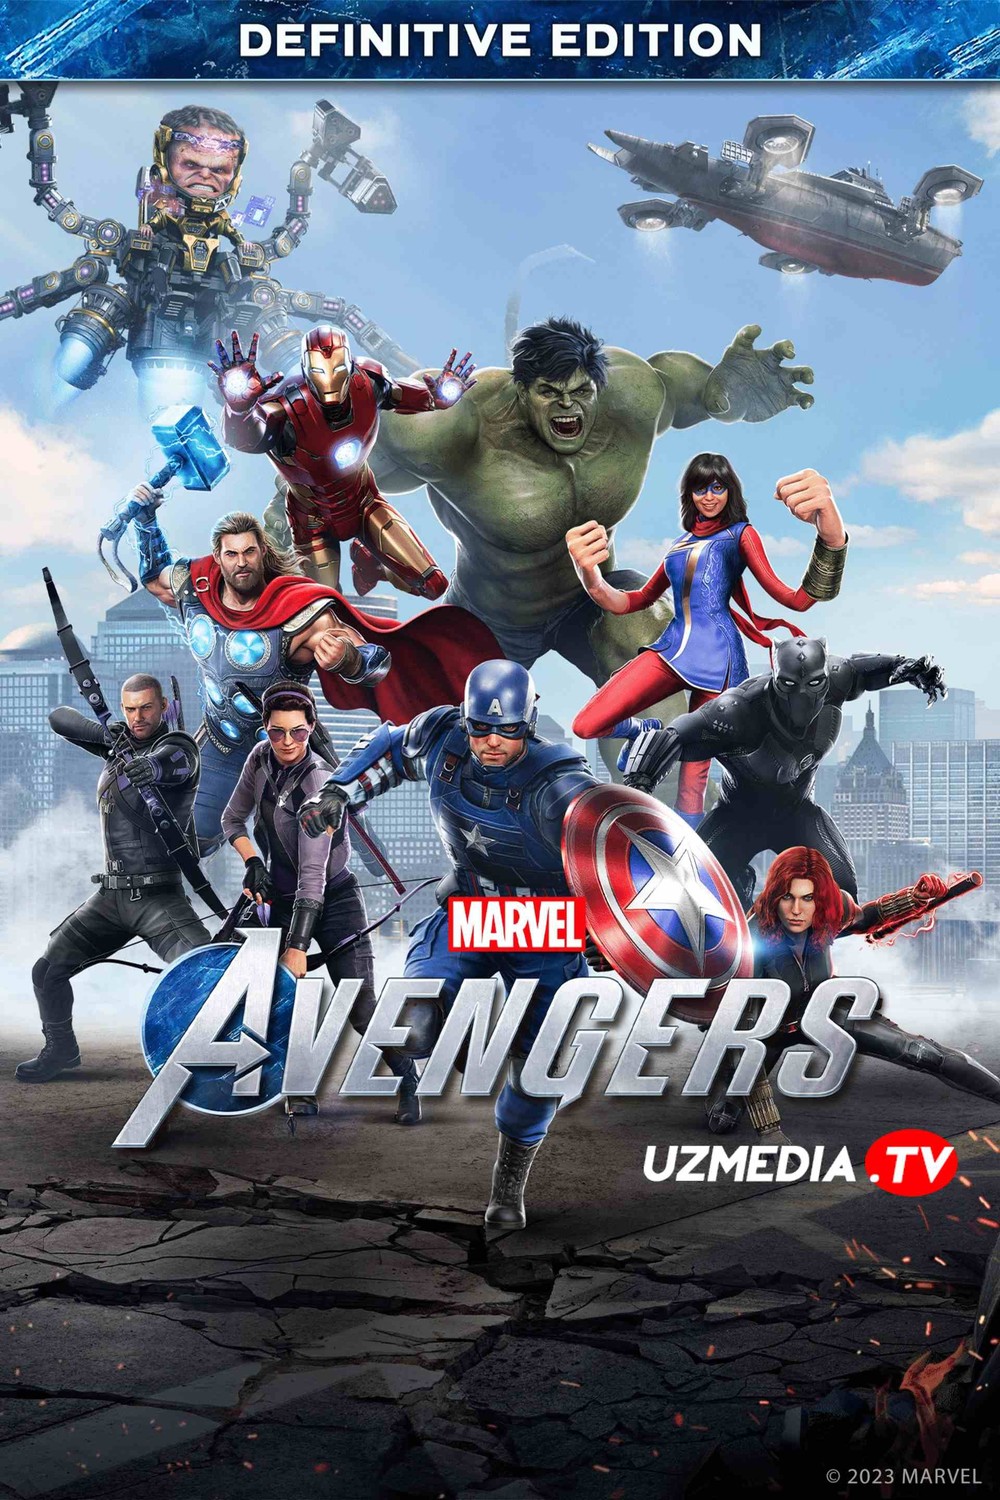 Marvel's Avengers - The Definitive Edition RePack для ПК Tas-IX скачать торрент бесплатно